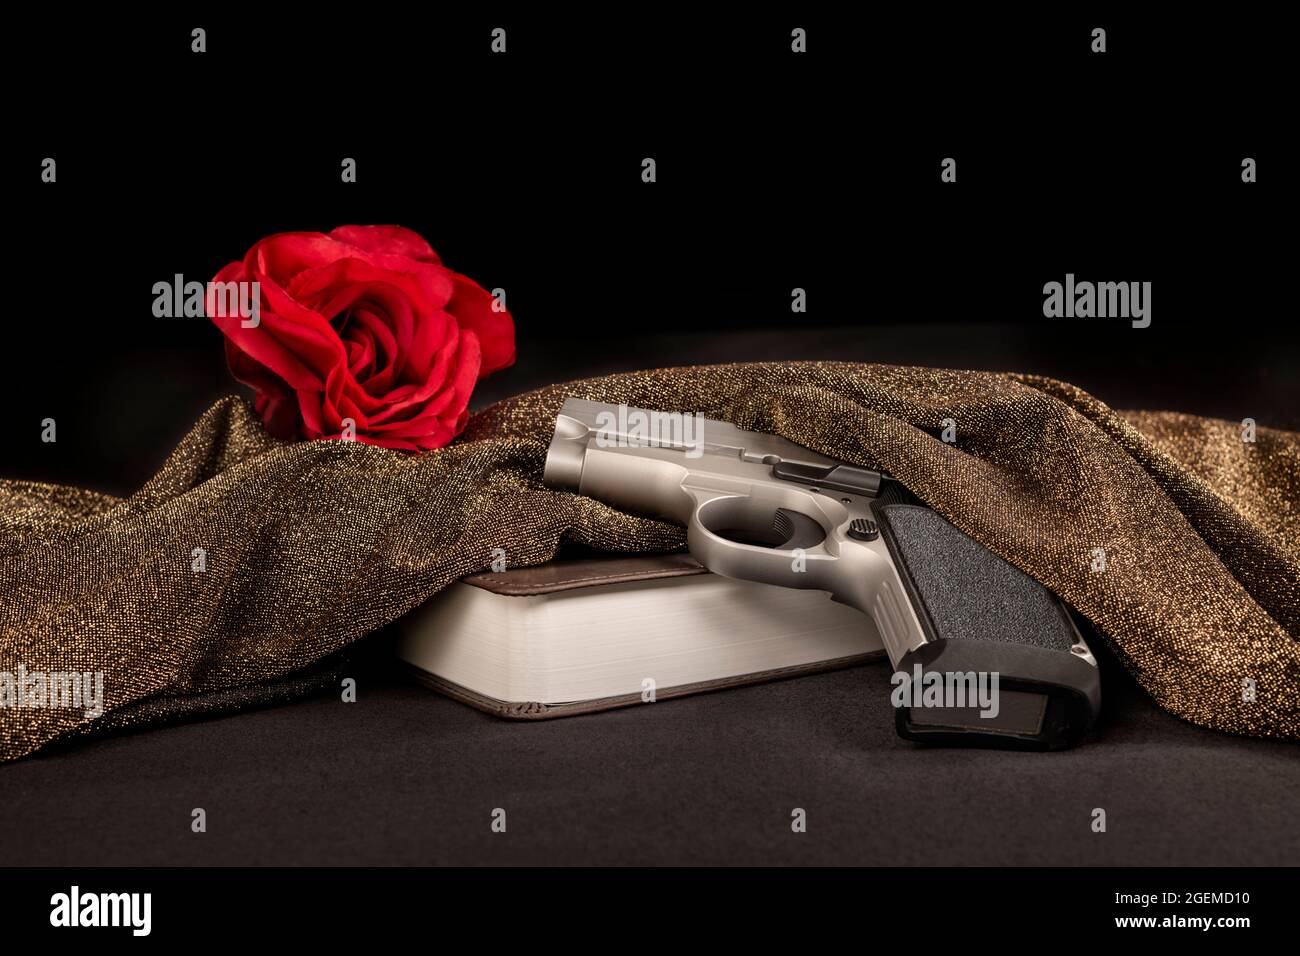 Als Teil einer kriminellen Organisation stellt dieses Bild eine symbolische rote Rose hinter einer bibel und einem Gewehr dar, ein Ritual vor dem Töten von Mafia-Schlagern. Stockfoto